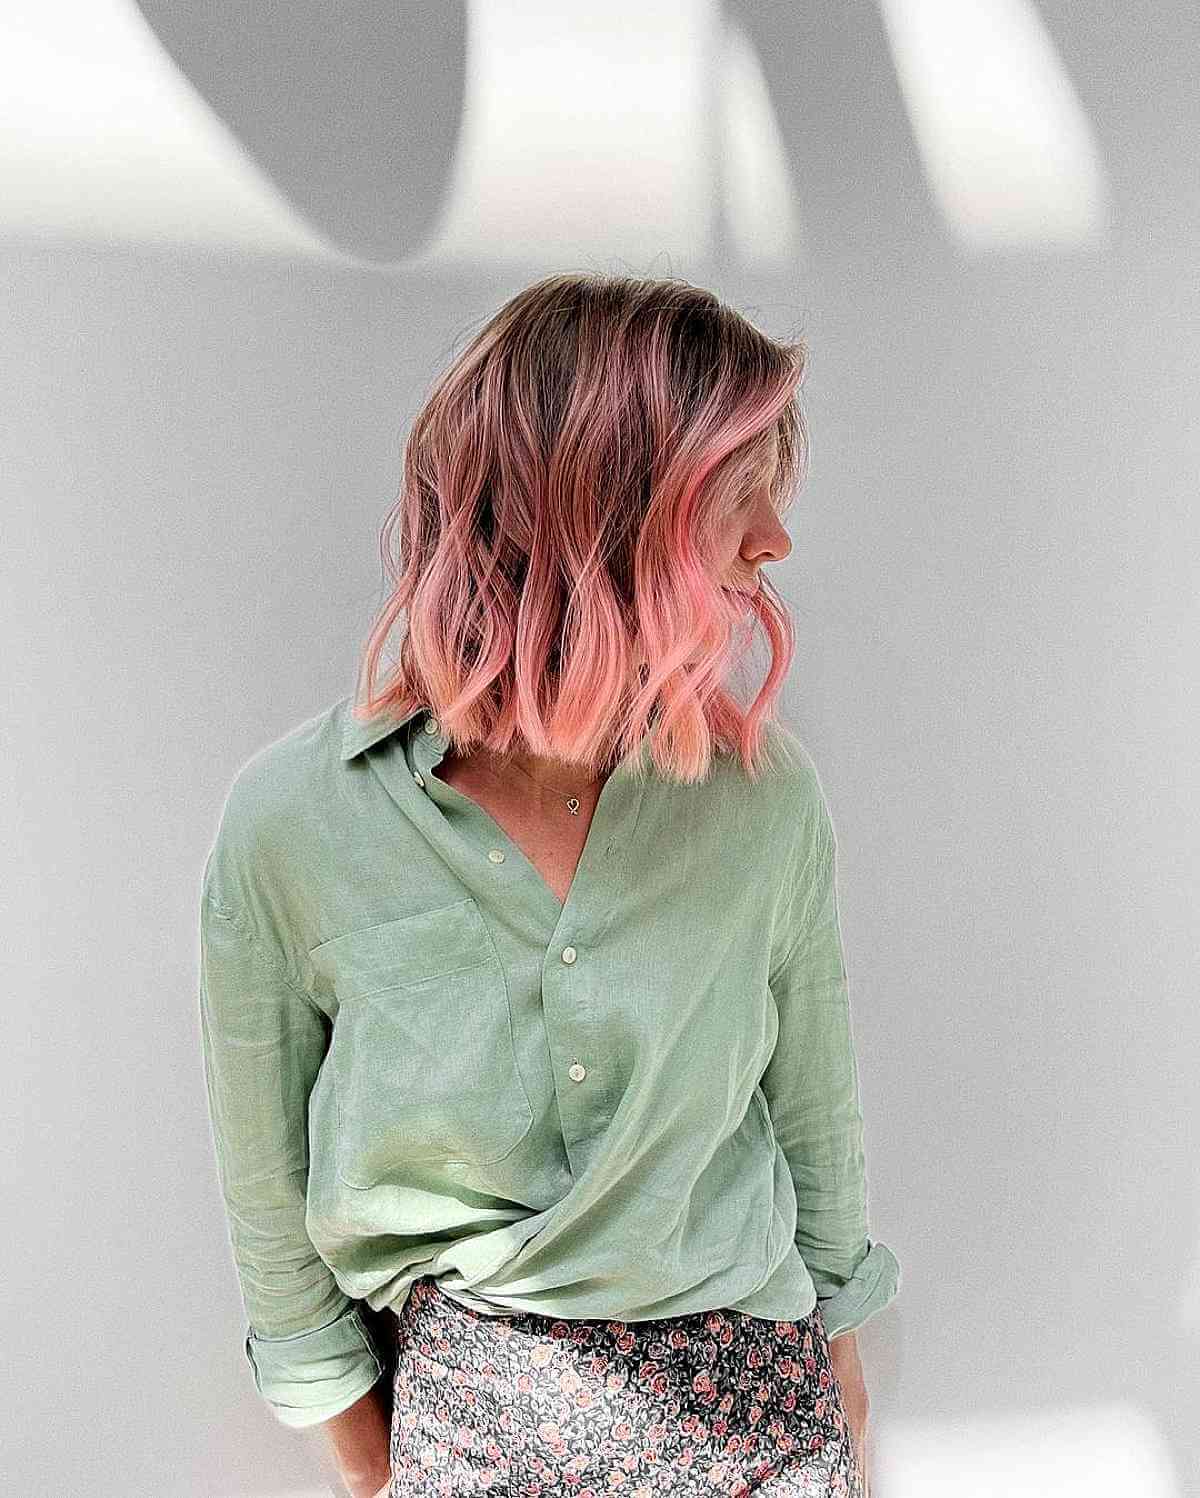 Pastel Peach Colored Hair